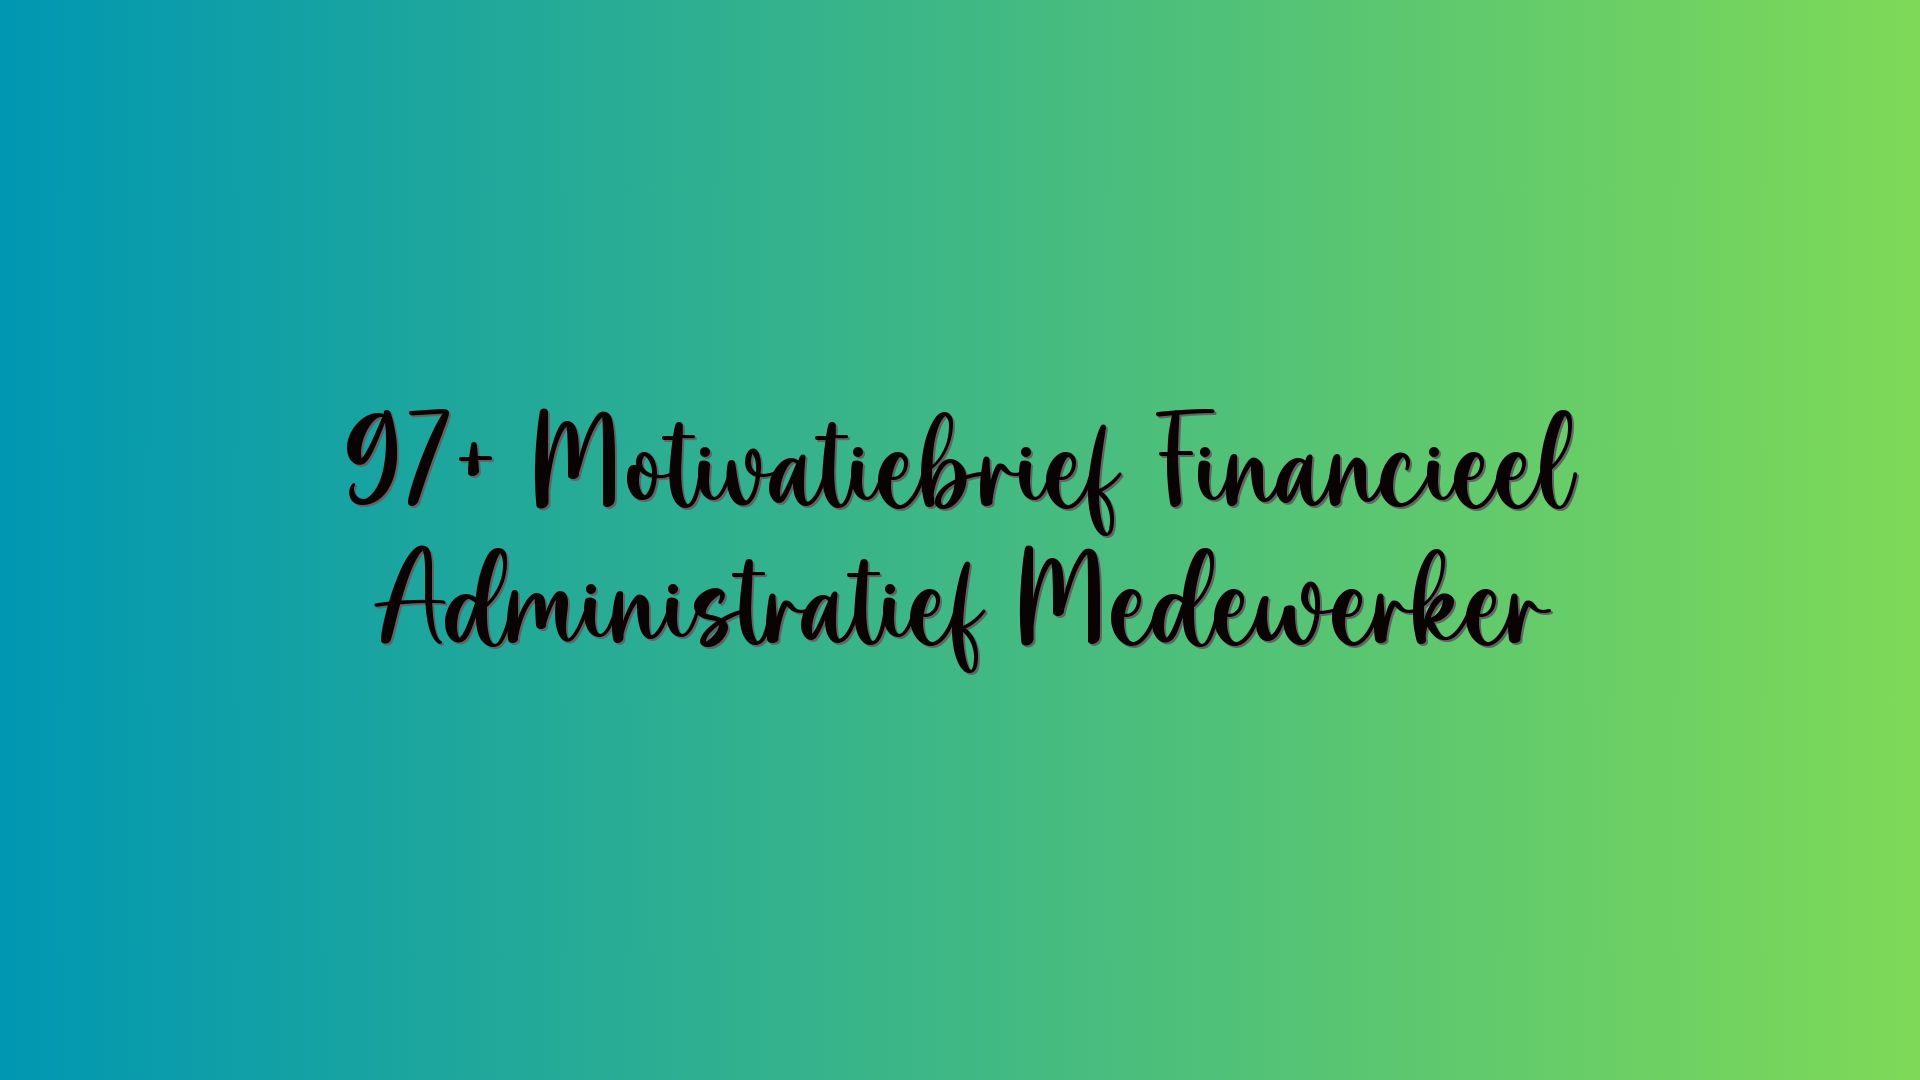 97+ Motivatiebrief Financieel Administratief Medewerker